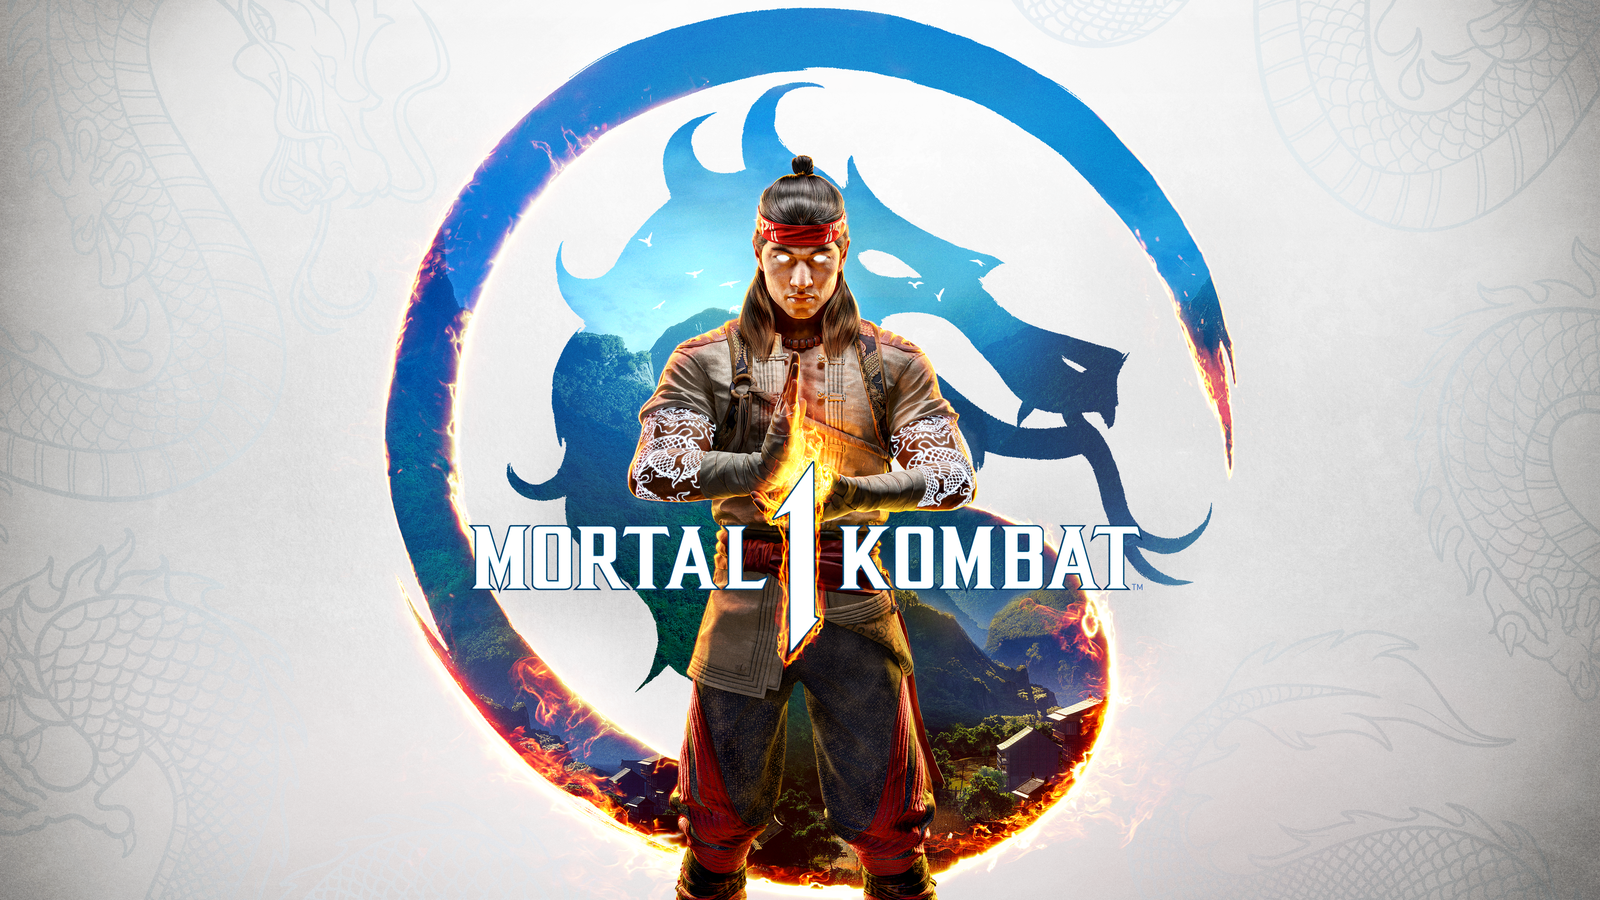 No Mortal Kombat 1 Cross-Play at Launch